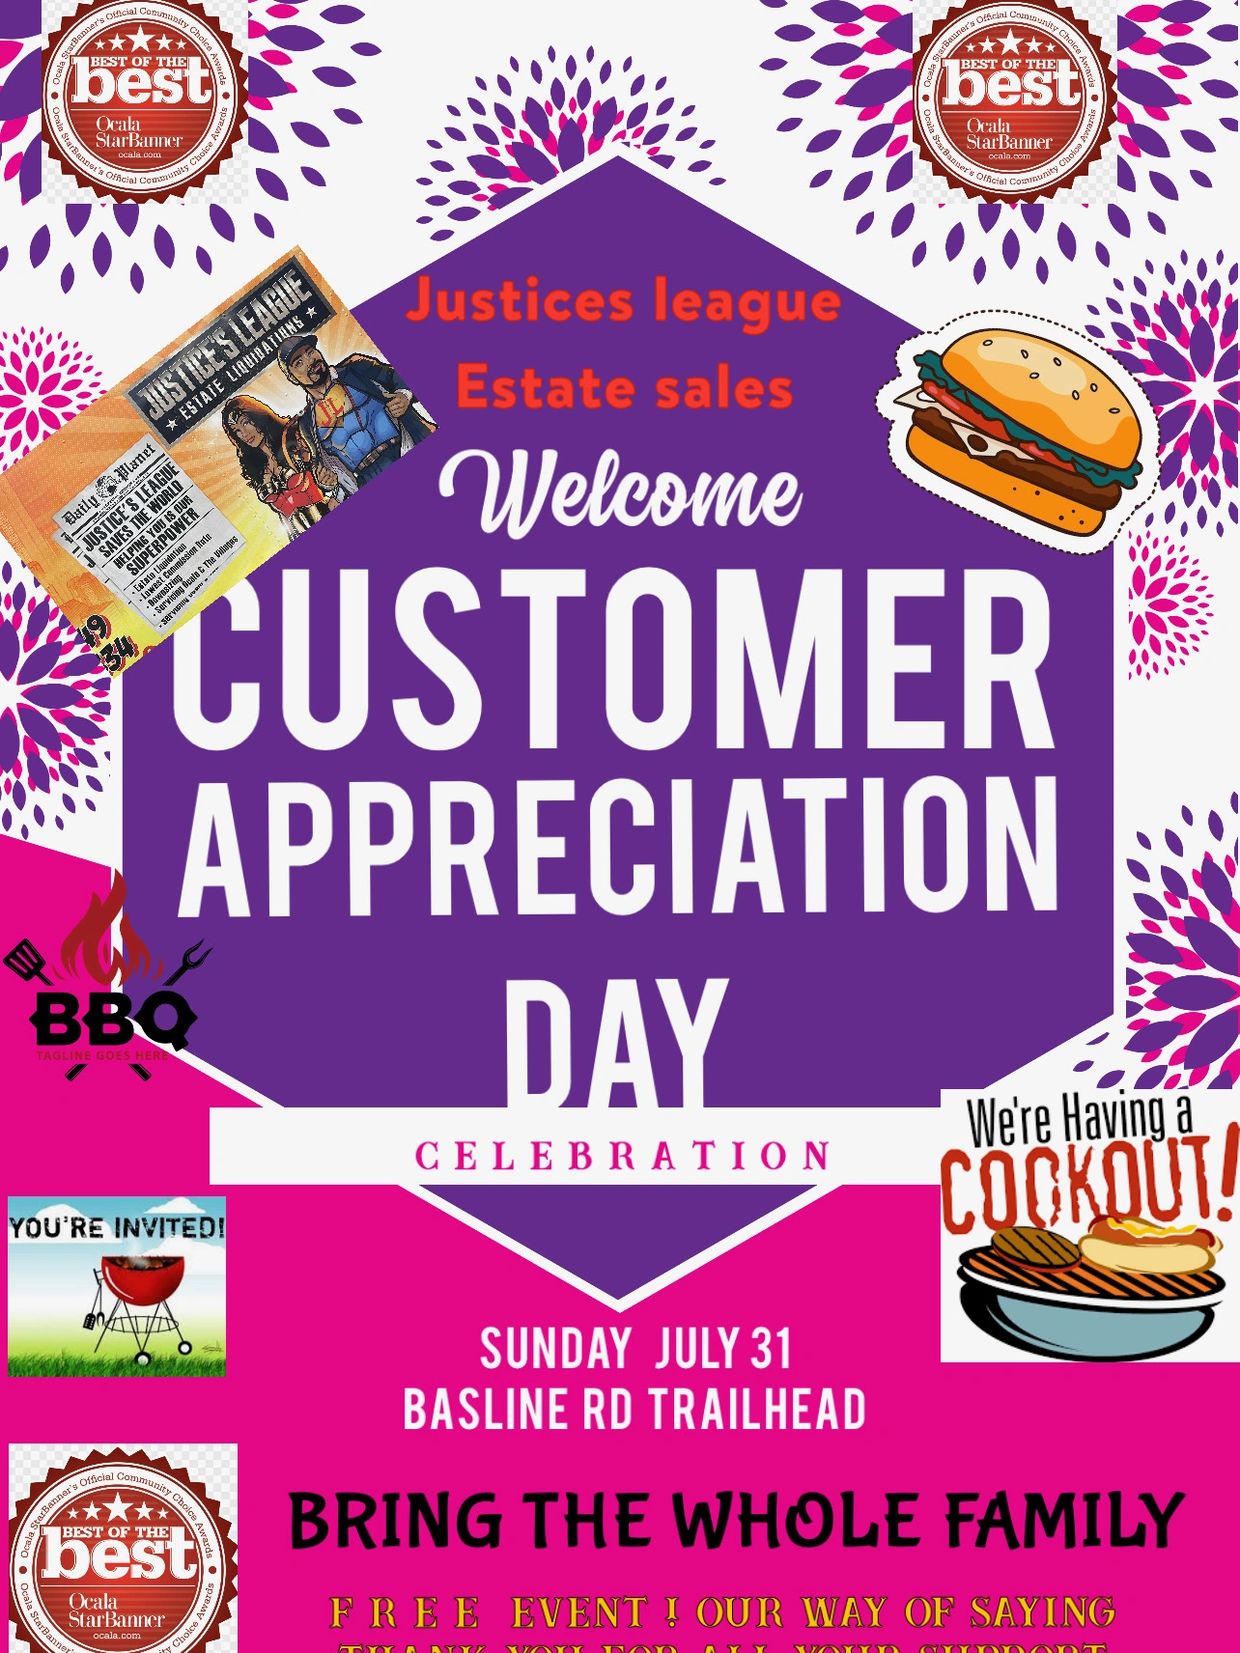 Customer Appreciation Day Justice's League Estate Sales